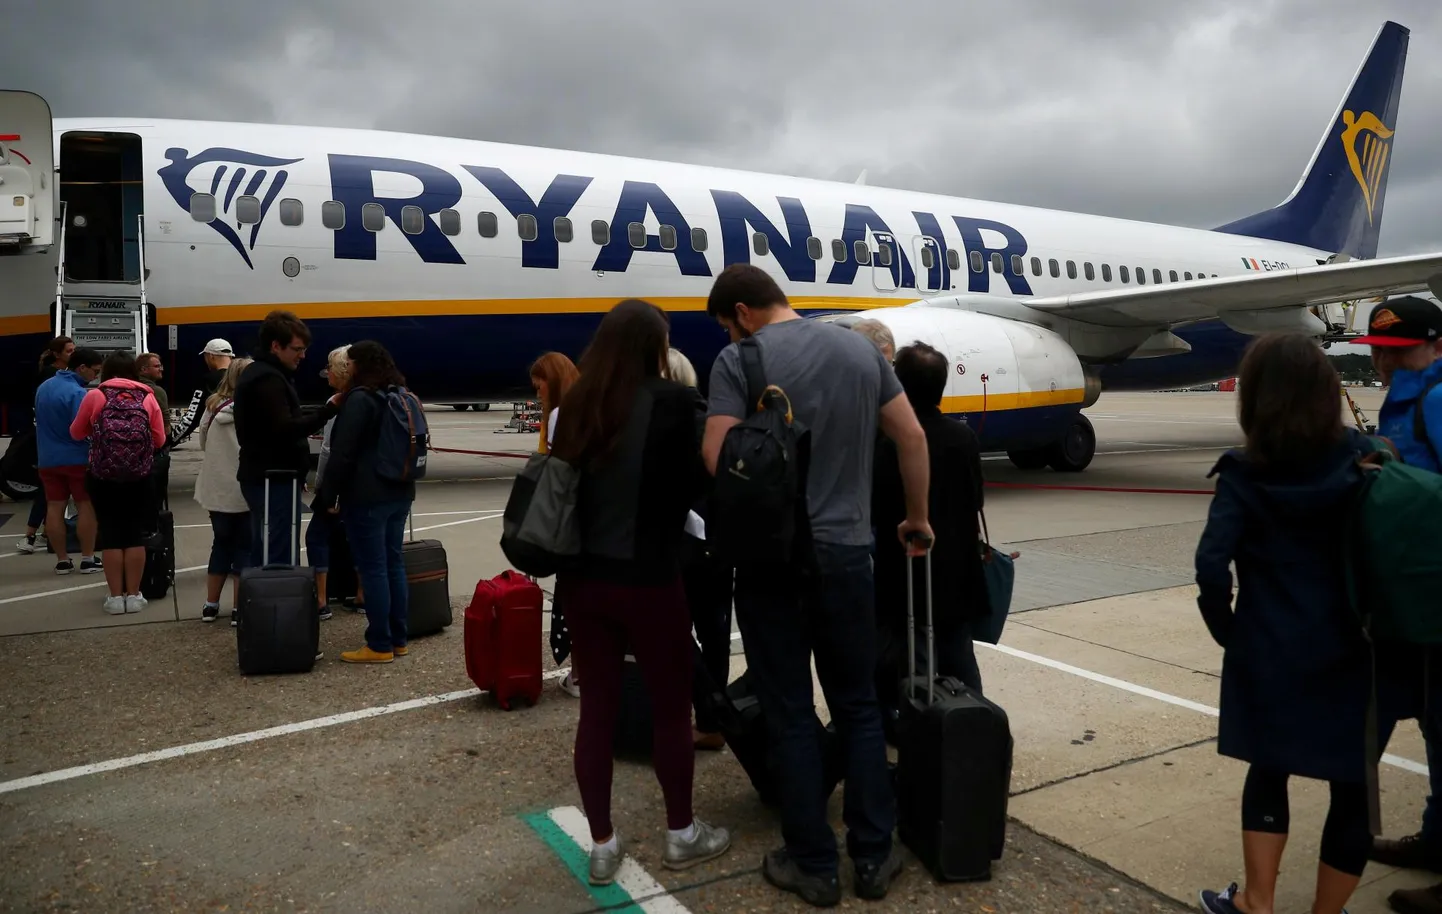 Ryanair sai märtsis lõppenud majandusaastal 1,4 miljardit eurot kasumit. FOTO: Hannah Mckay/REUTERS/scanpix